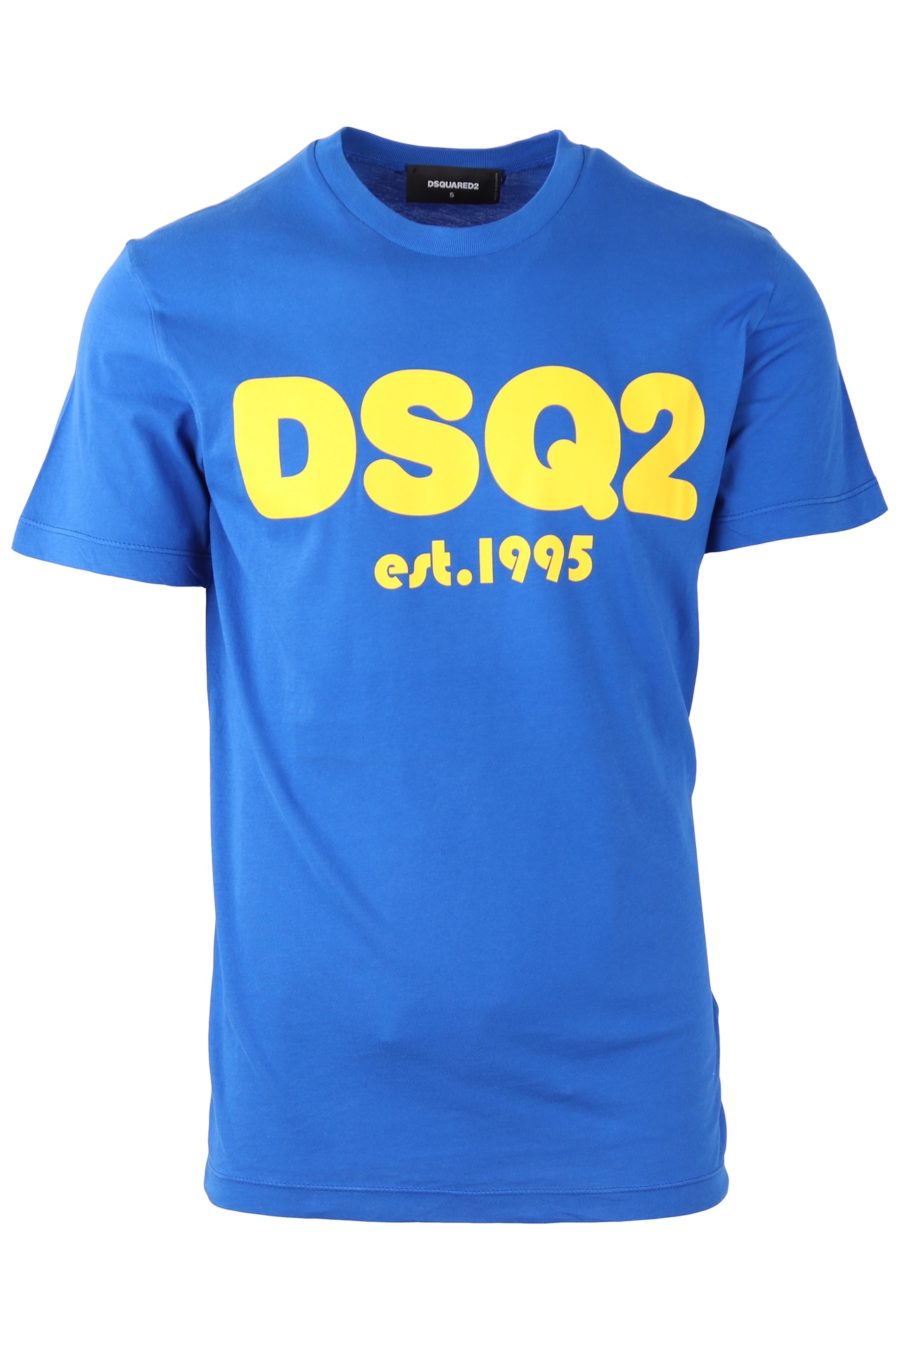 Camiseta Dsquared2 azul con logo grande DSQ2 - 09c8819637b6c20c862834a1bee4c7cb524ee88b